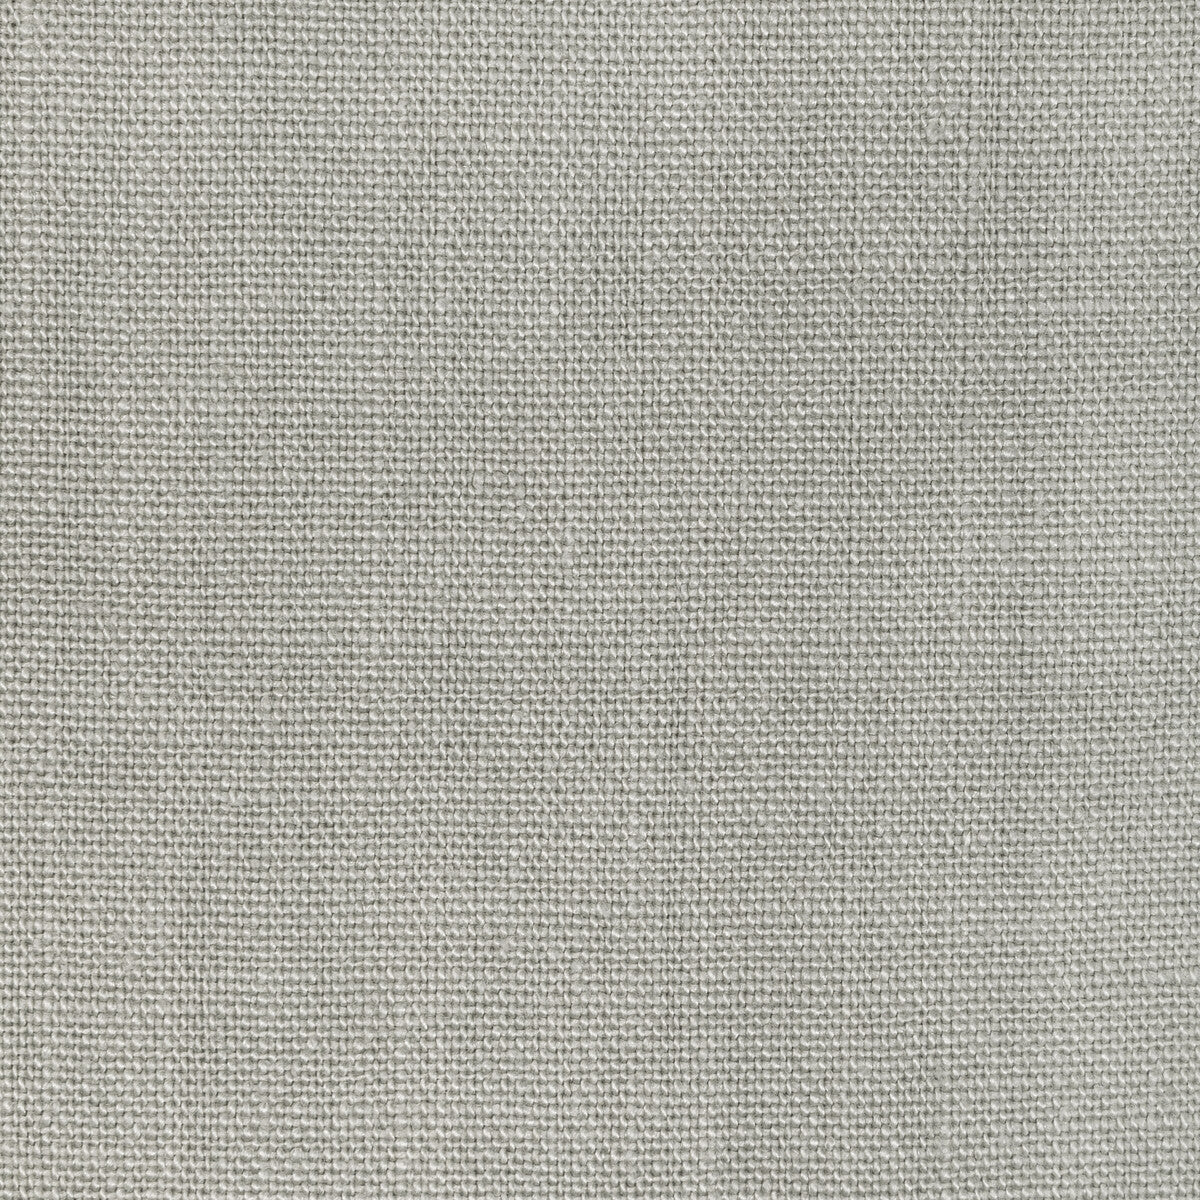 Kravet Basics fabric in 36332-11 color - pattern 36332.11.0 - by Kravet Basics